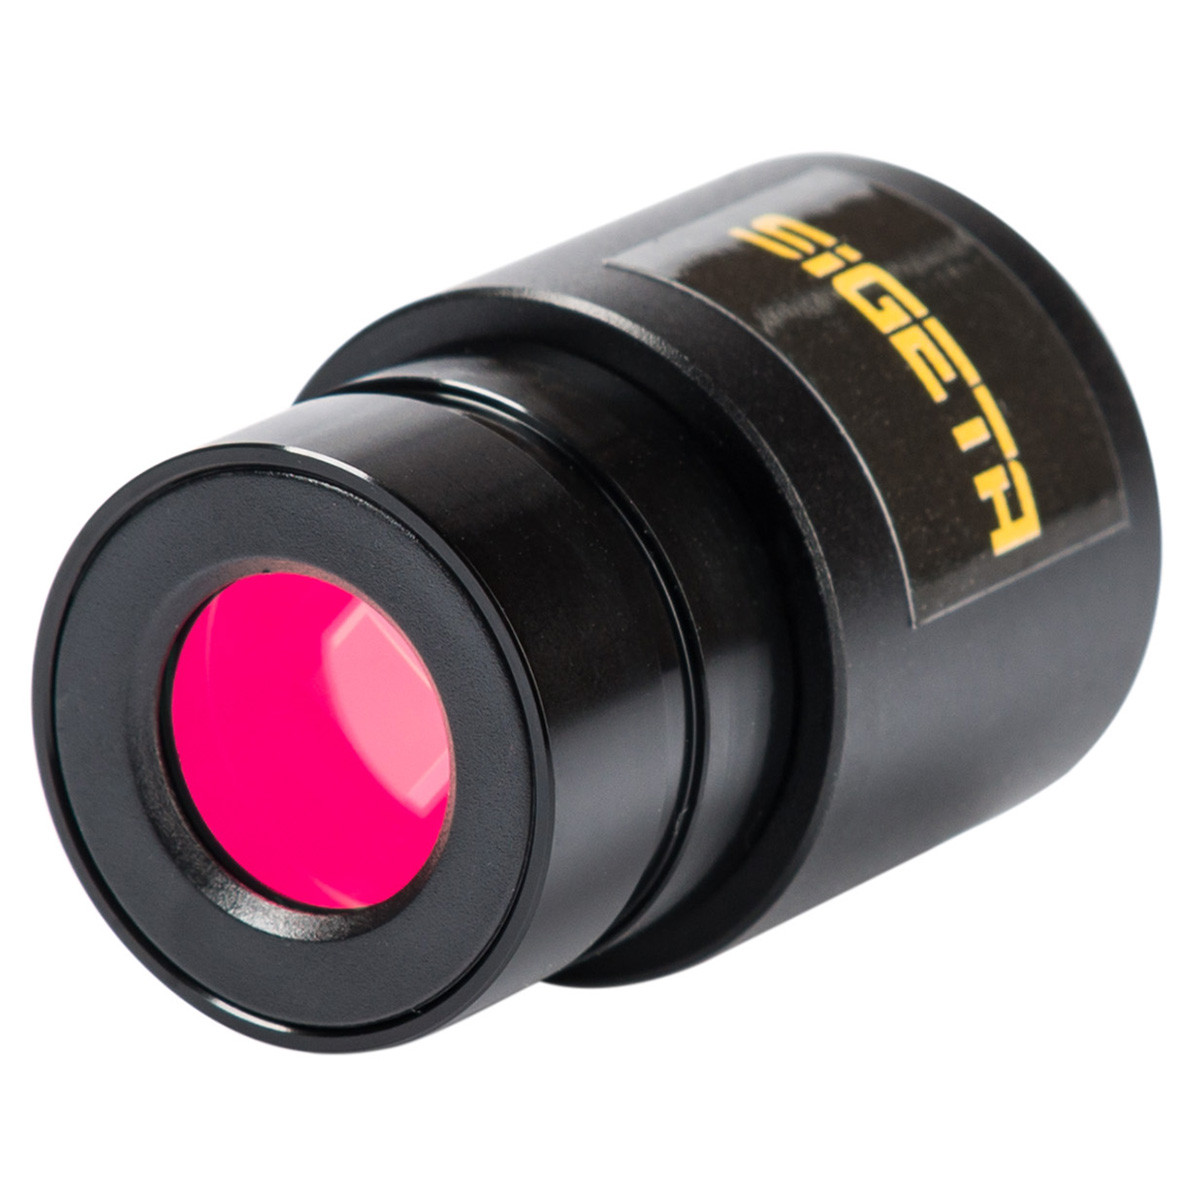 Камера для мікроскопа SIGETA MDC-500 5.0 MP